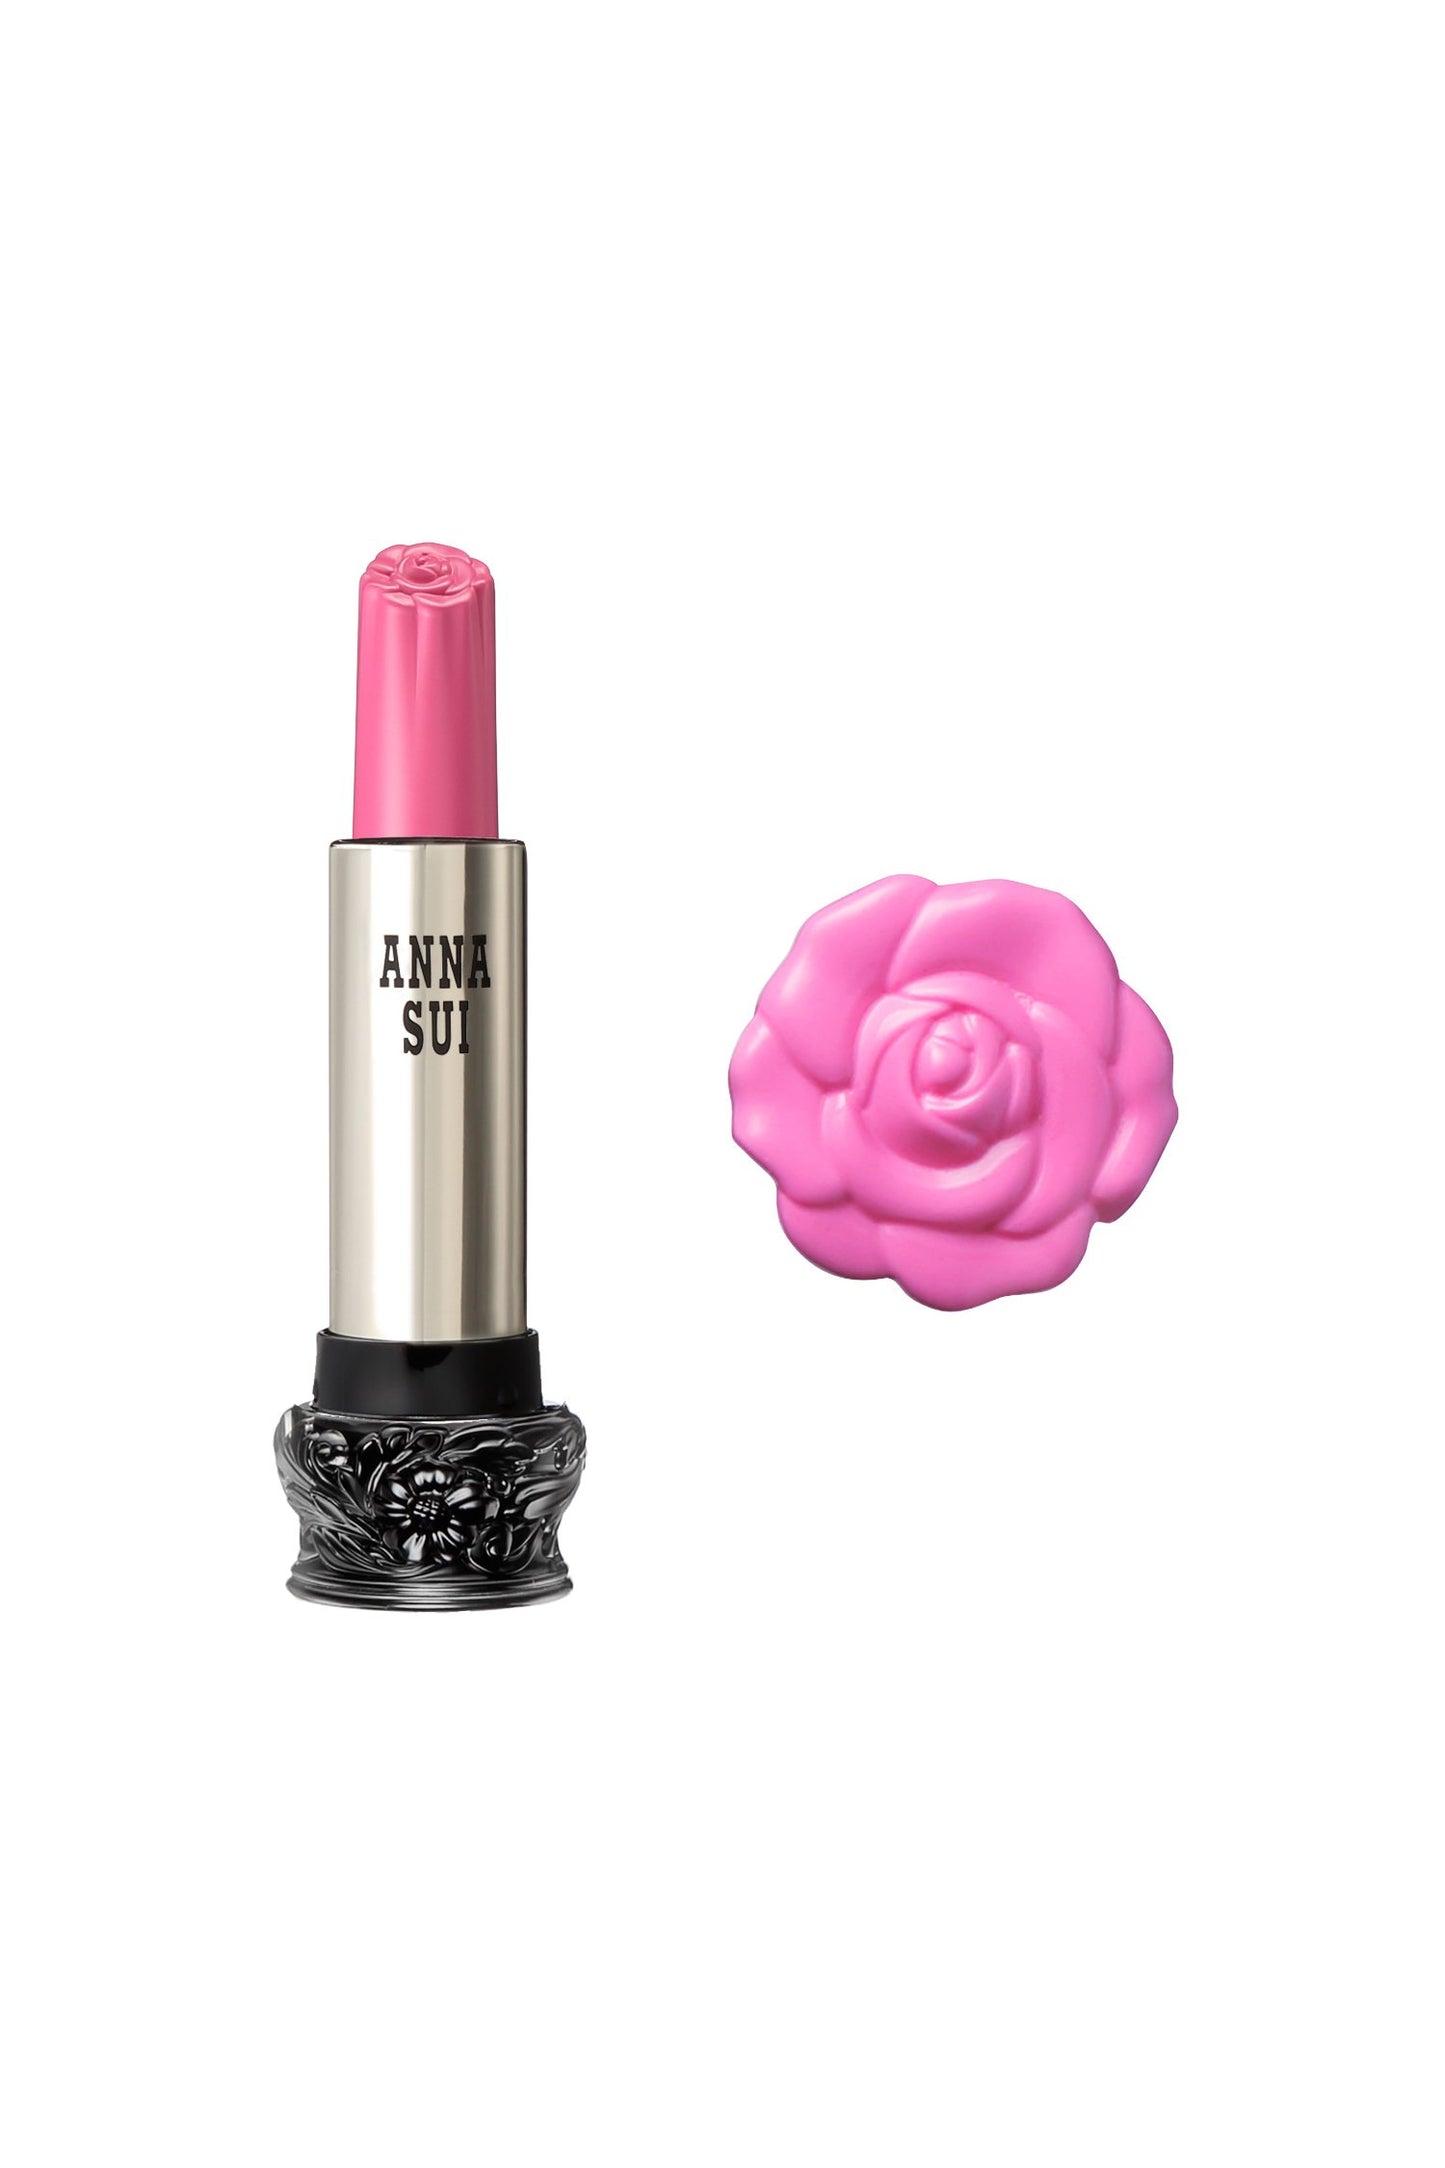 303 - 粉紅波斯菊唇膏 F： 仙女花， 在一個圓柱形容器， 大黑色底座， 雕刻花卉設計， 金屬身體